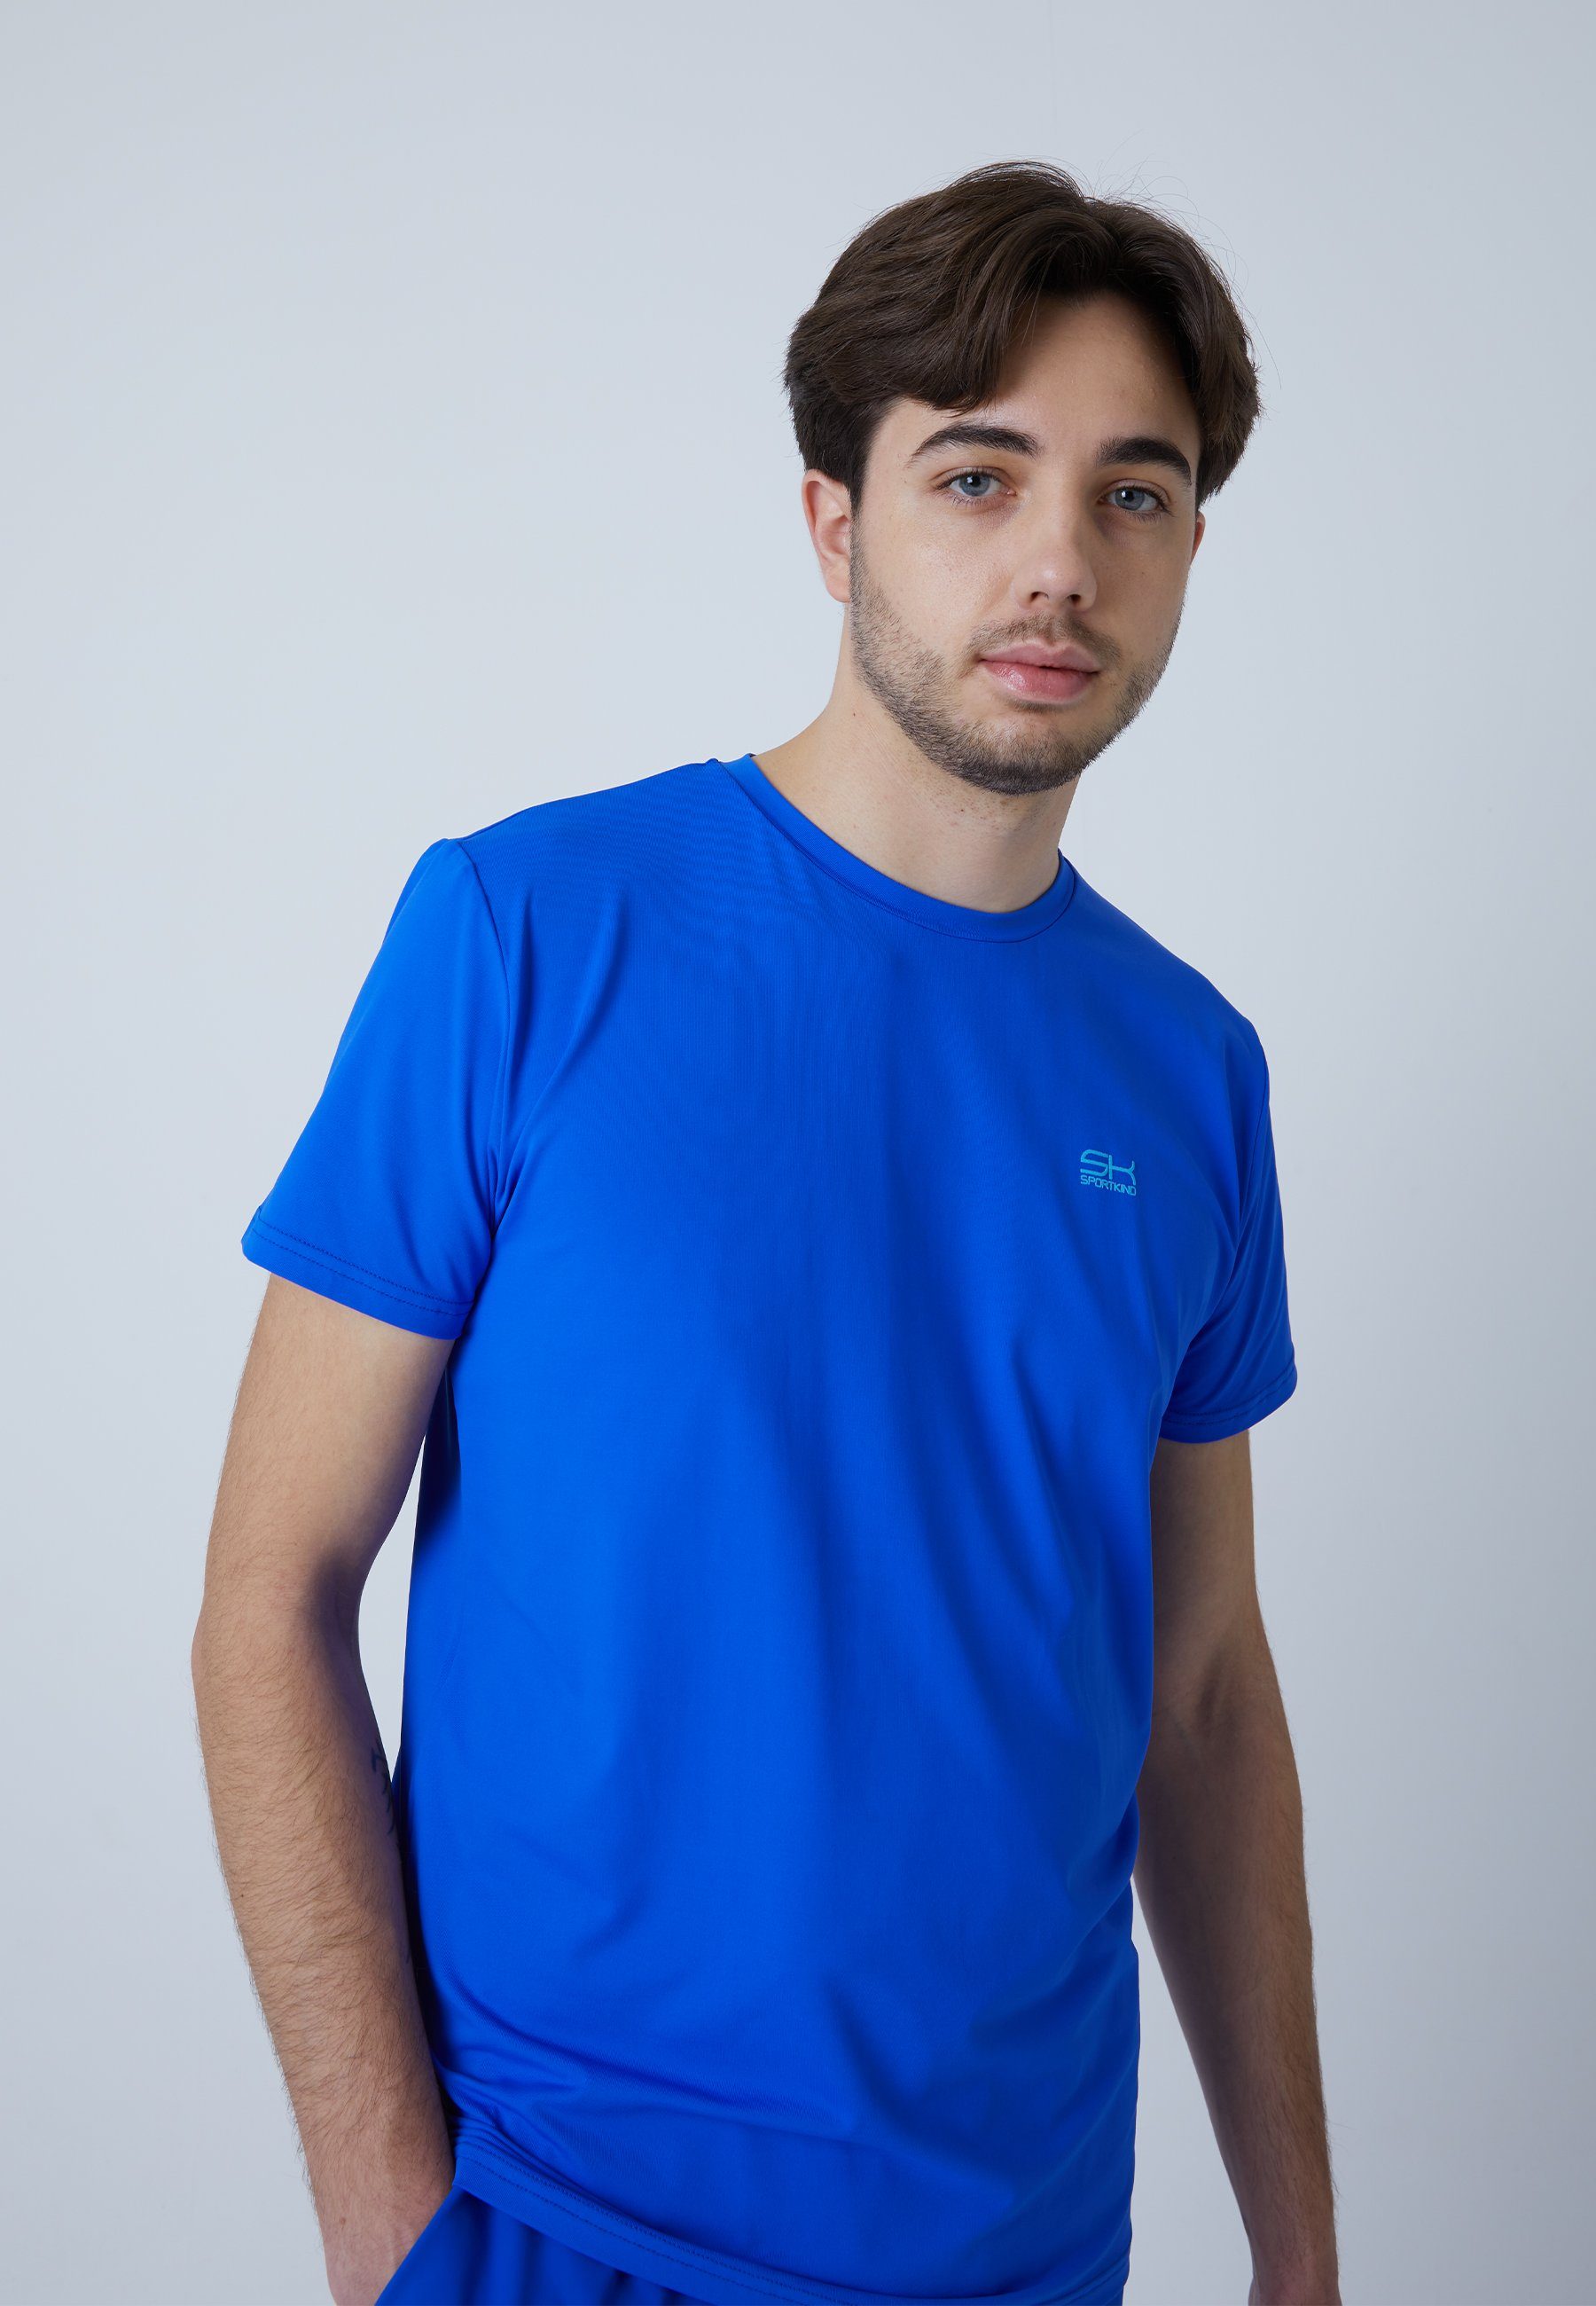 Funktionsshirt & Jungen T-Shirt Herren Tennis SPORTKIND kobaltblau Rundhals